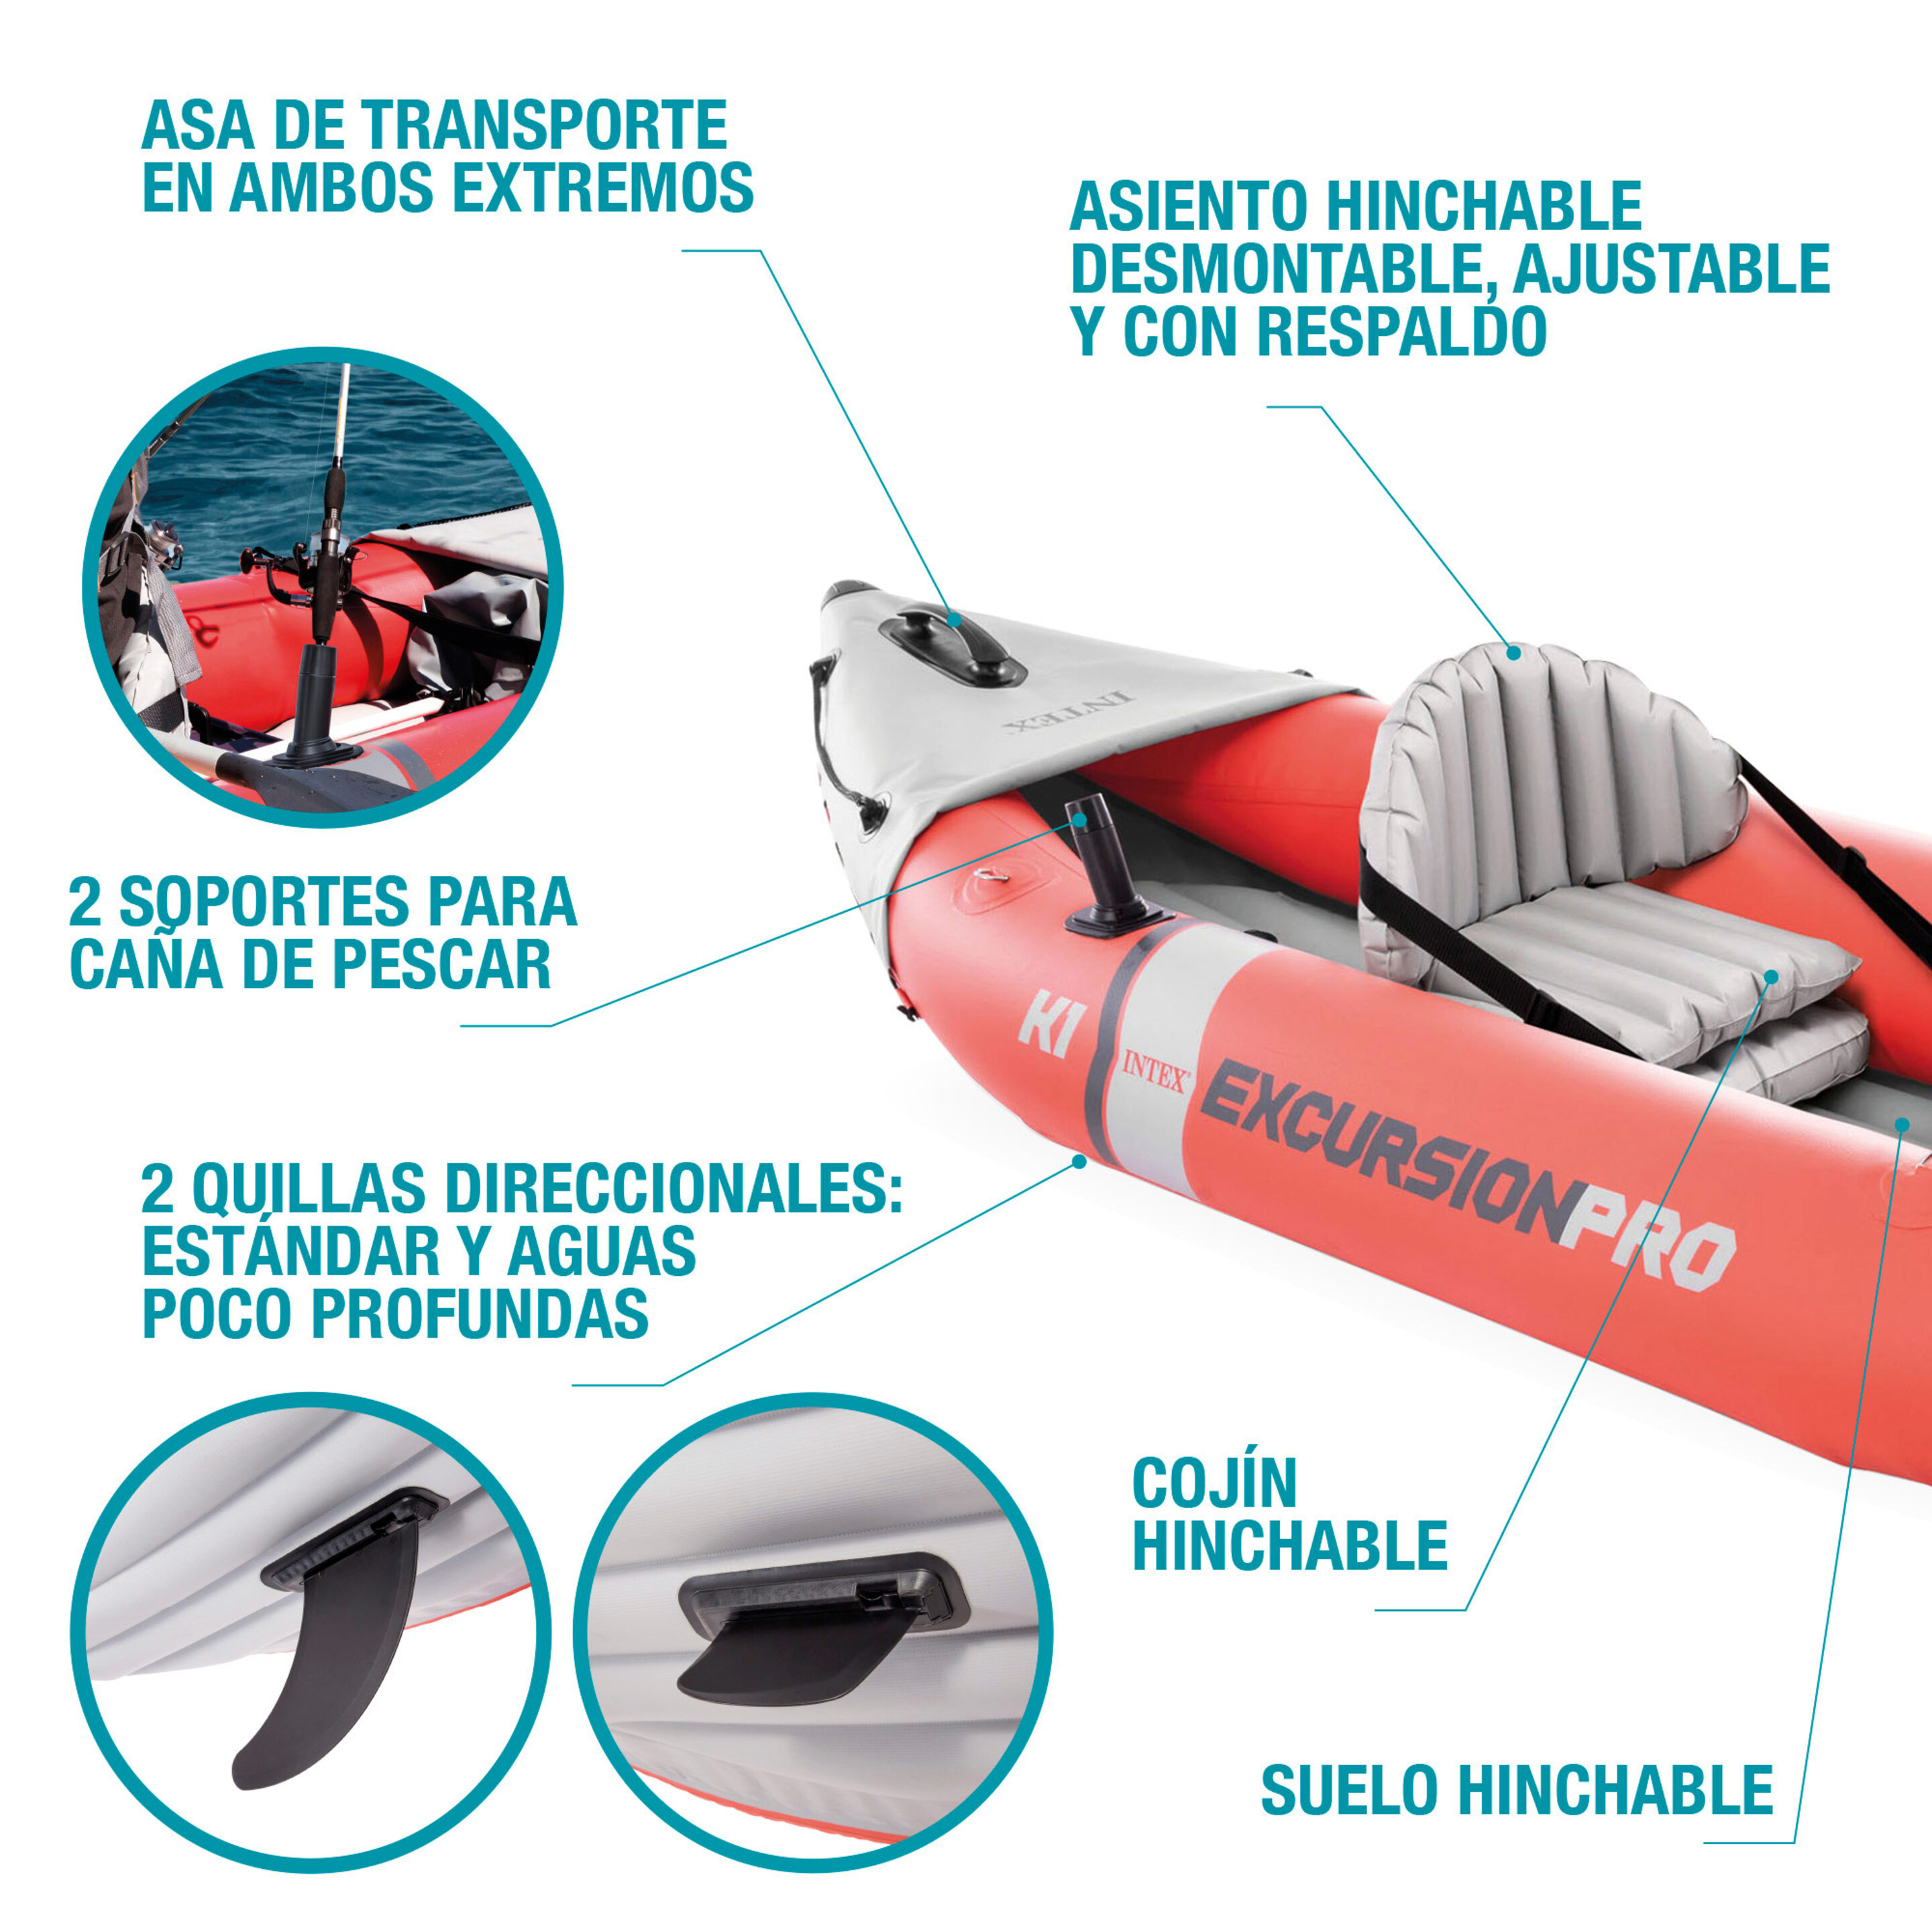 Kayak Hinchable Intex K1 Excursion Pro 1 Remo + Hinchador - Rojo - Kayak individual  MKP